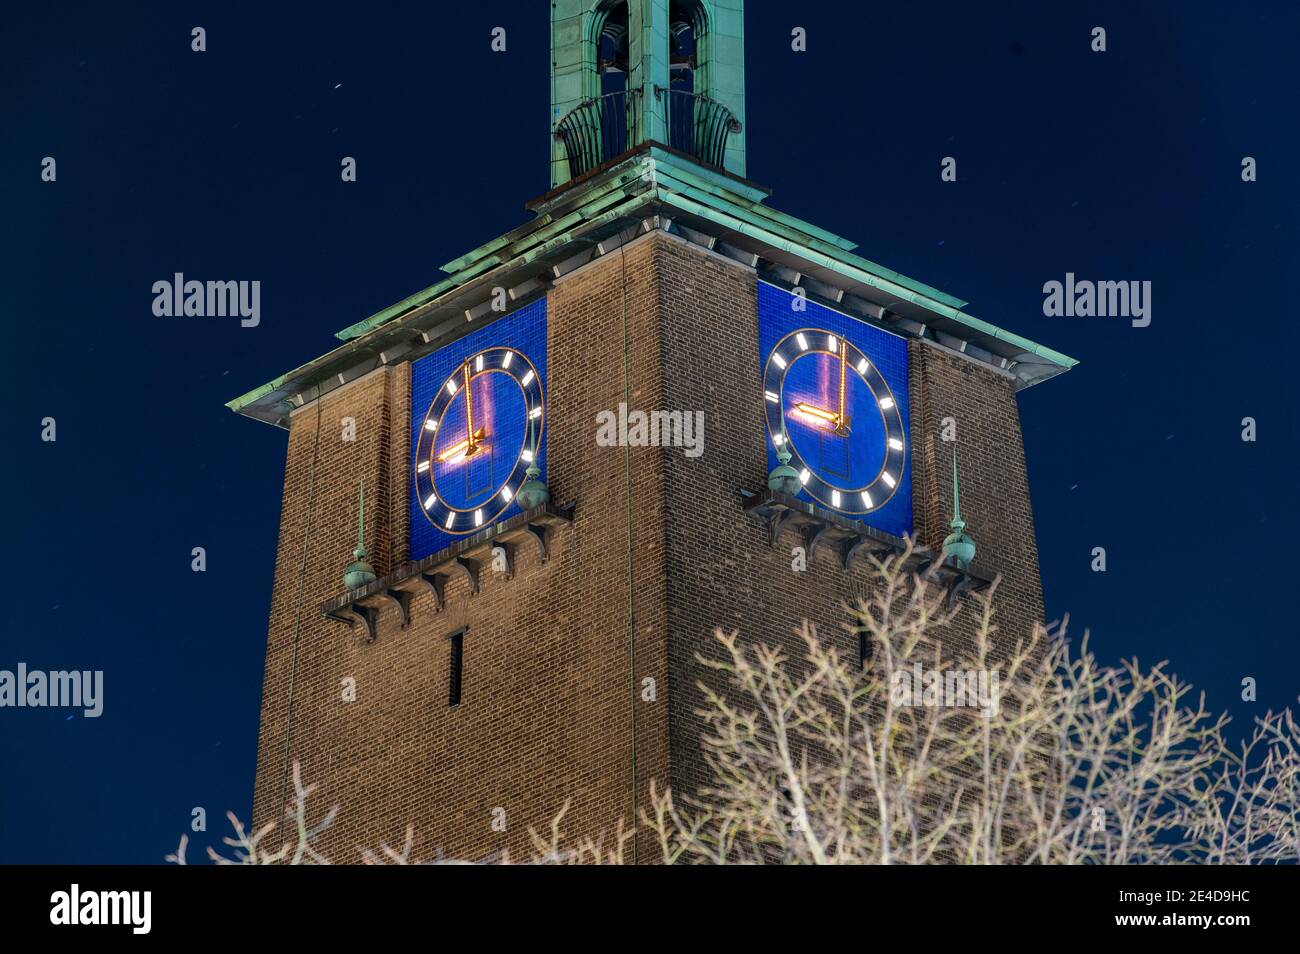 El reloj del ayuntamiento de Enschede en los países Bajos punto 21.00 horas. La época del toque de queda en los países Bajos durante el covid-19. Foto de stock